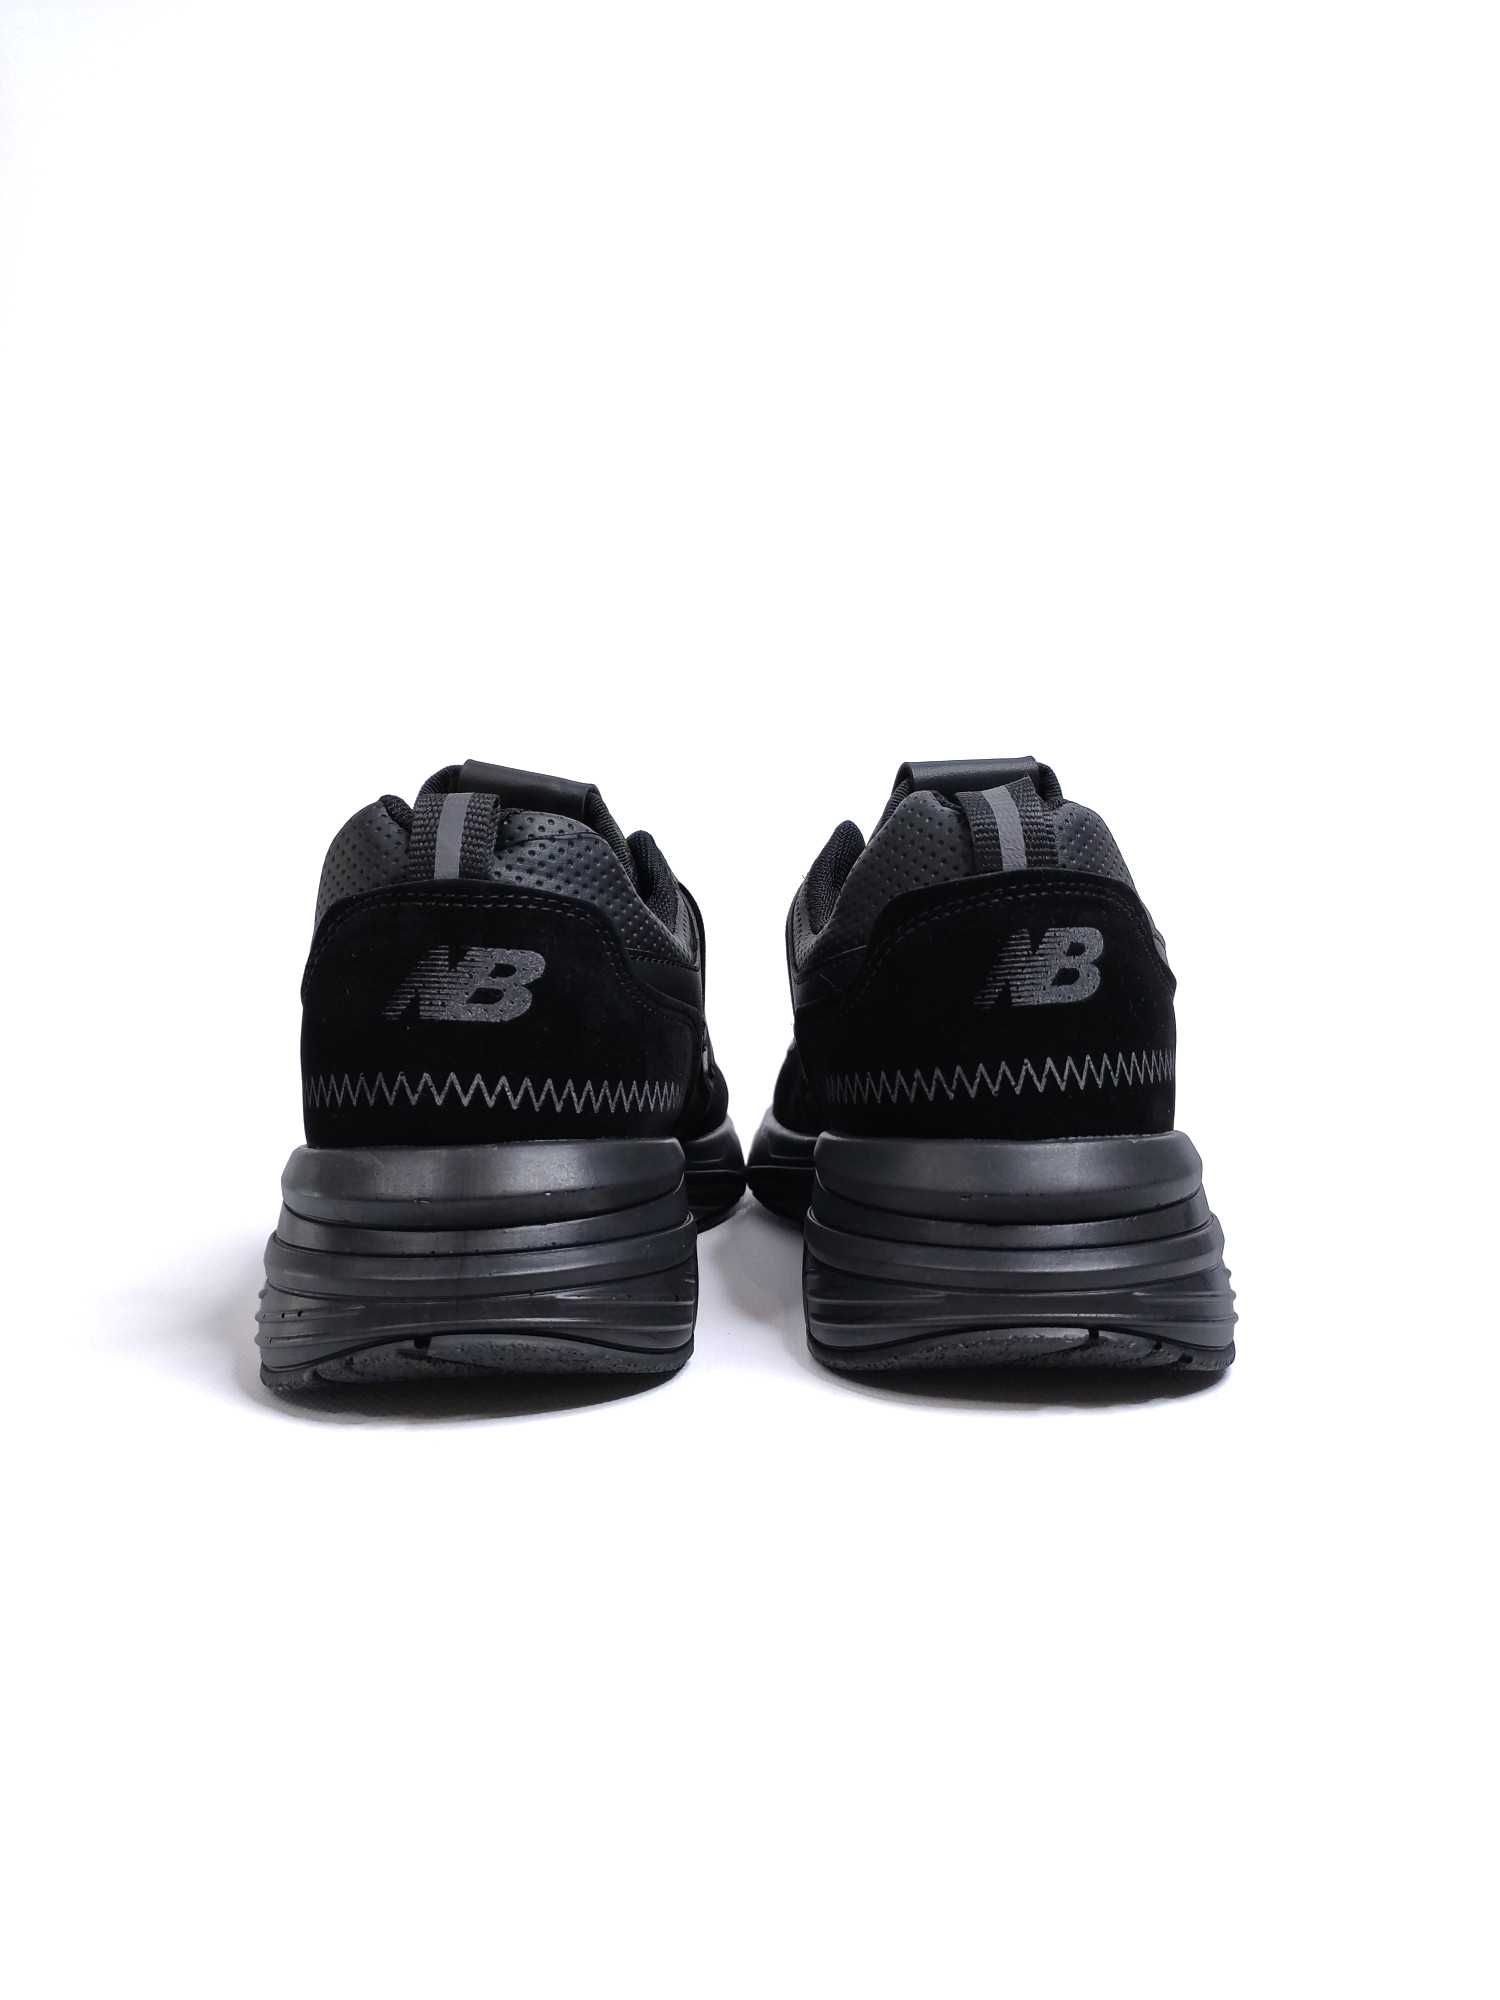 Мужские кроссовки New Balance Black. Размеры 40-41. Нью Беланс